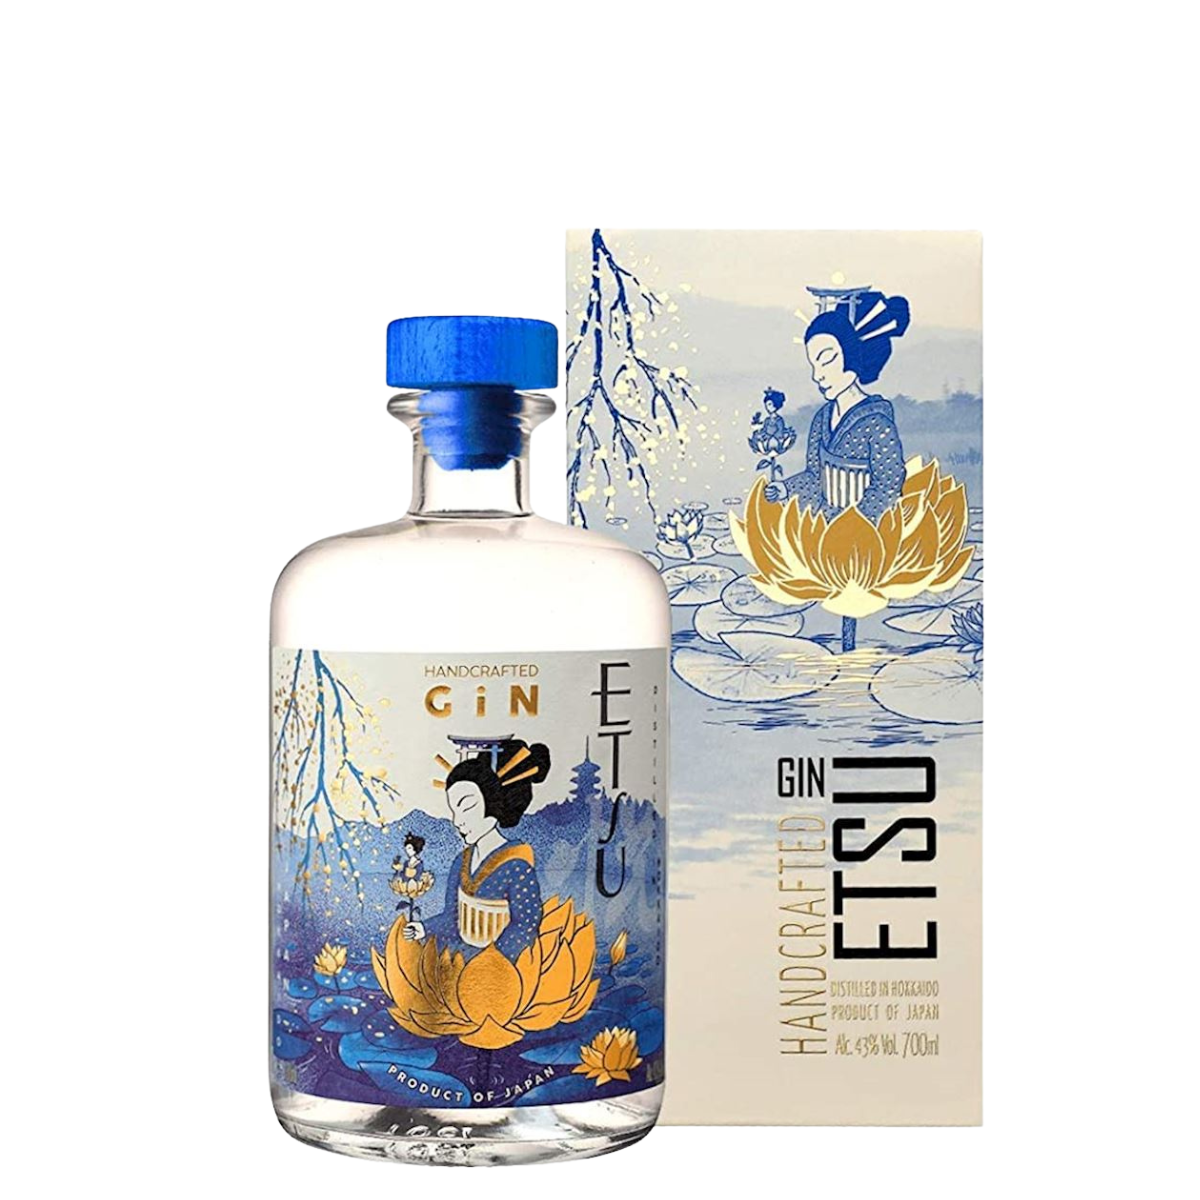 Gin ETSU Premium artesanal